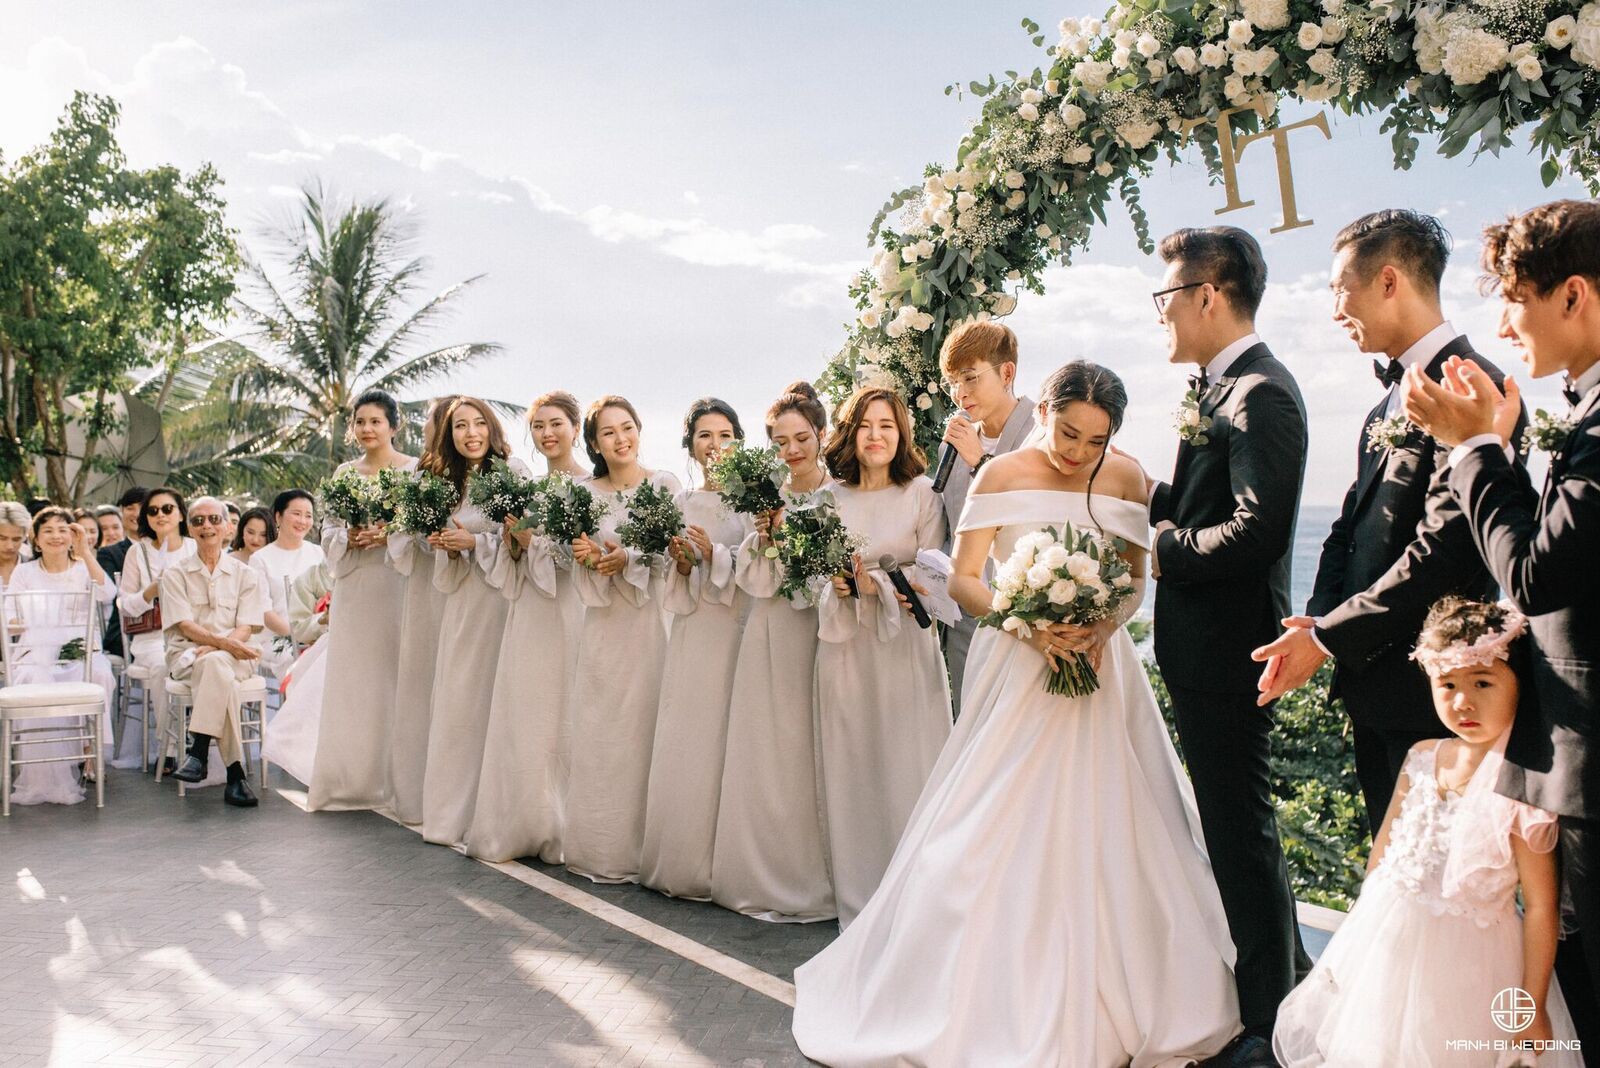 Nhà văn Gào chia sẻ nhiều thông tin thú vị về đám cưới như mơ ngay sau tiệc cưới hoành tráng trên bờ biển - Ảnh 13.